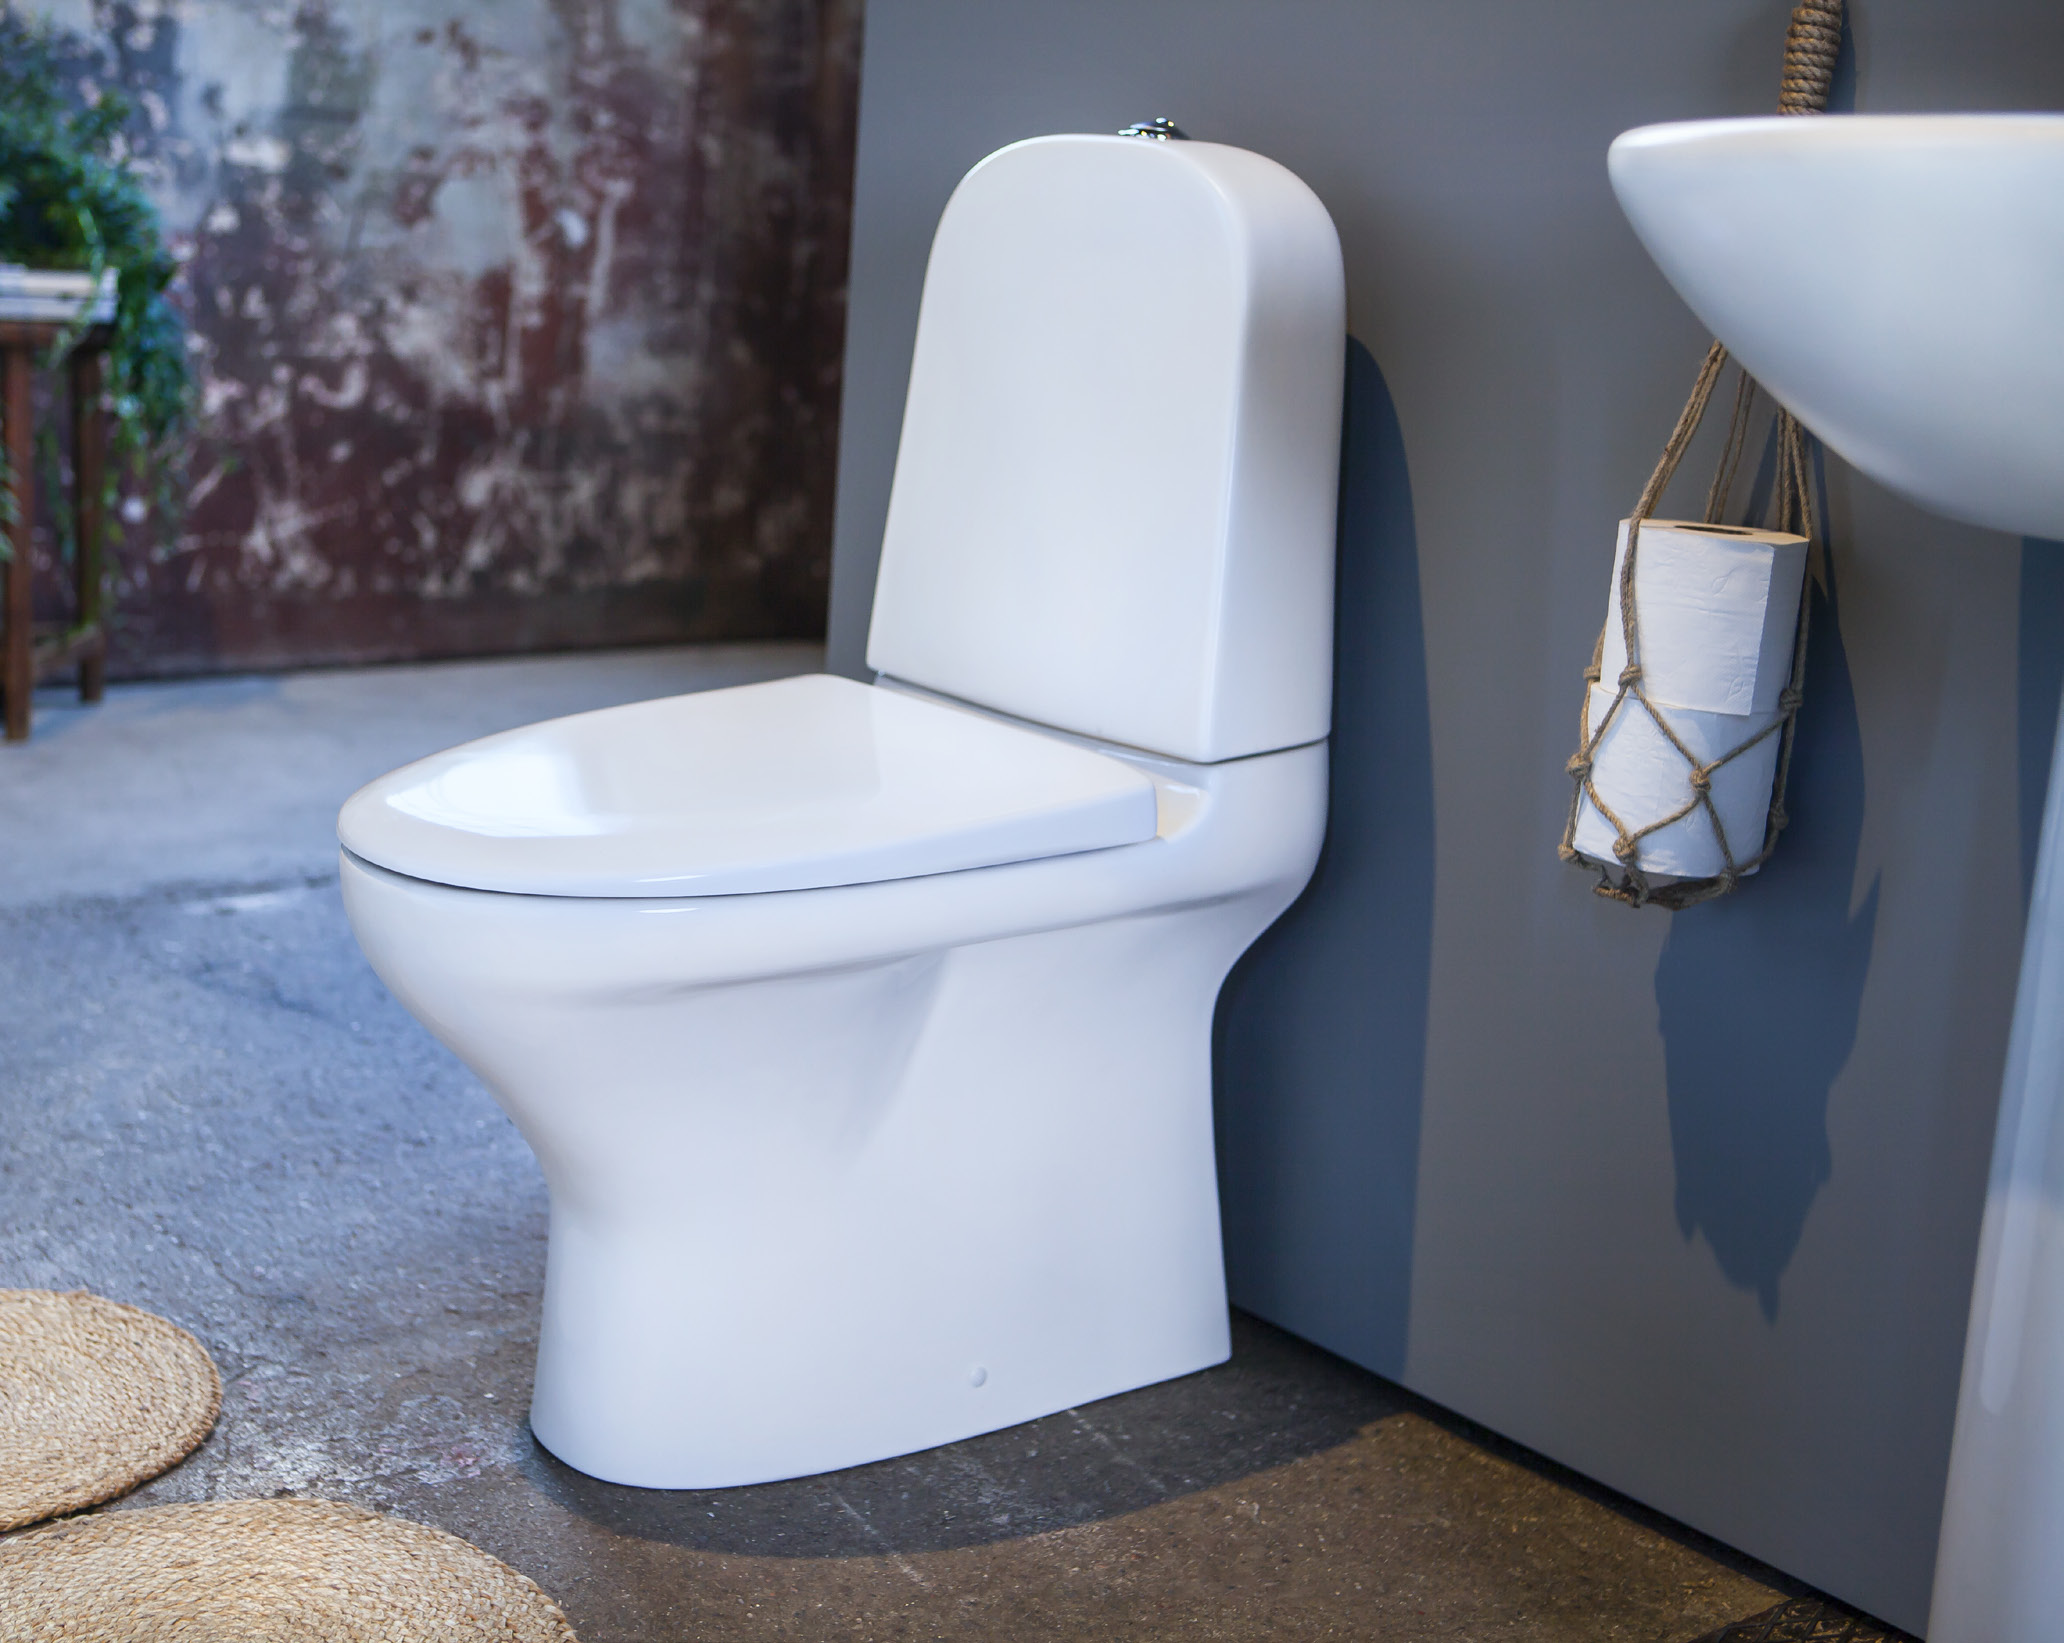 Inget stör den tilltalande, organiska formgivningen. Estetic badrumsporslin finns i tre färger: Blank vit, matt vit och svart och toaletten finns både som vägghängd och golvstående modell.